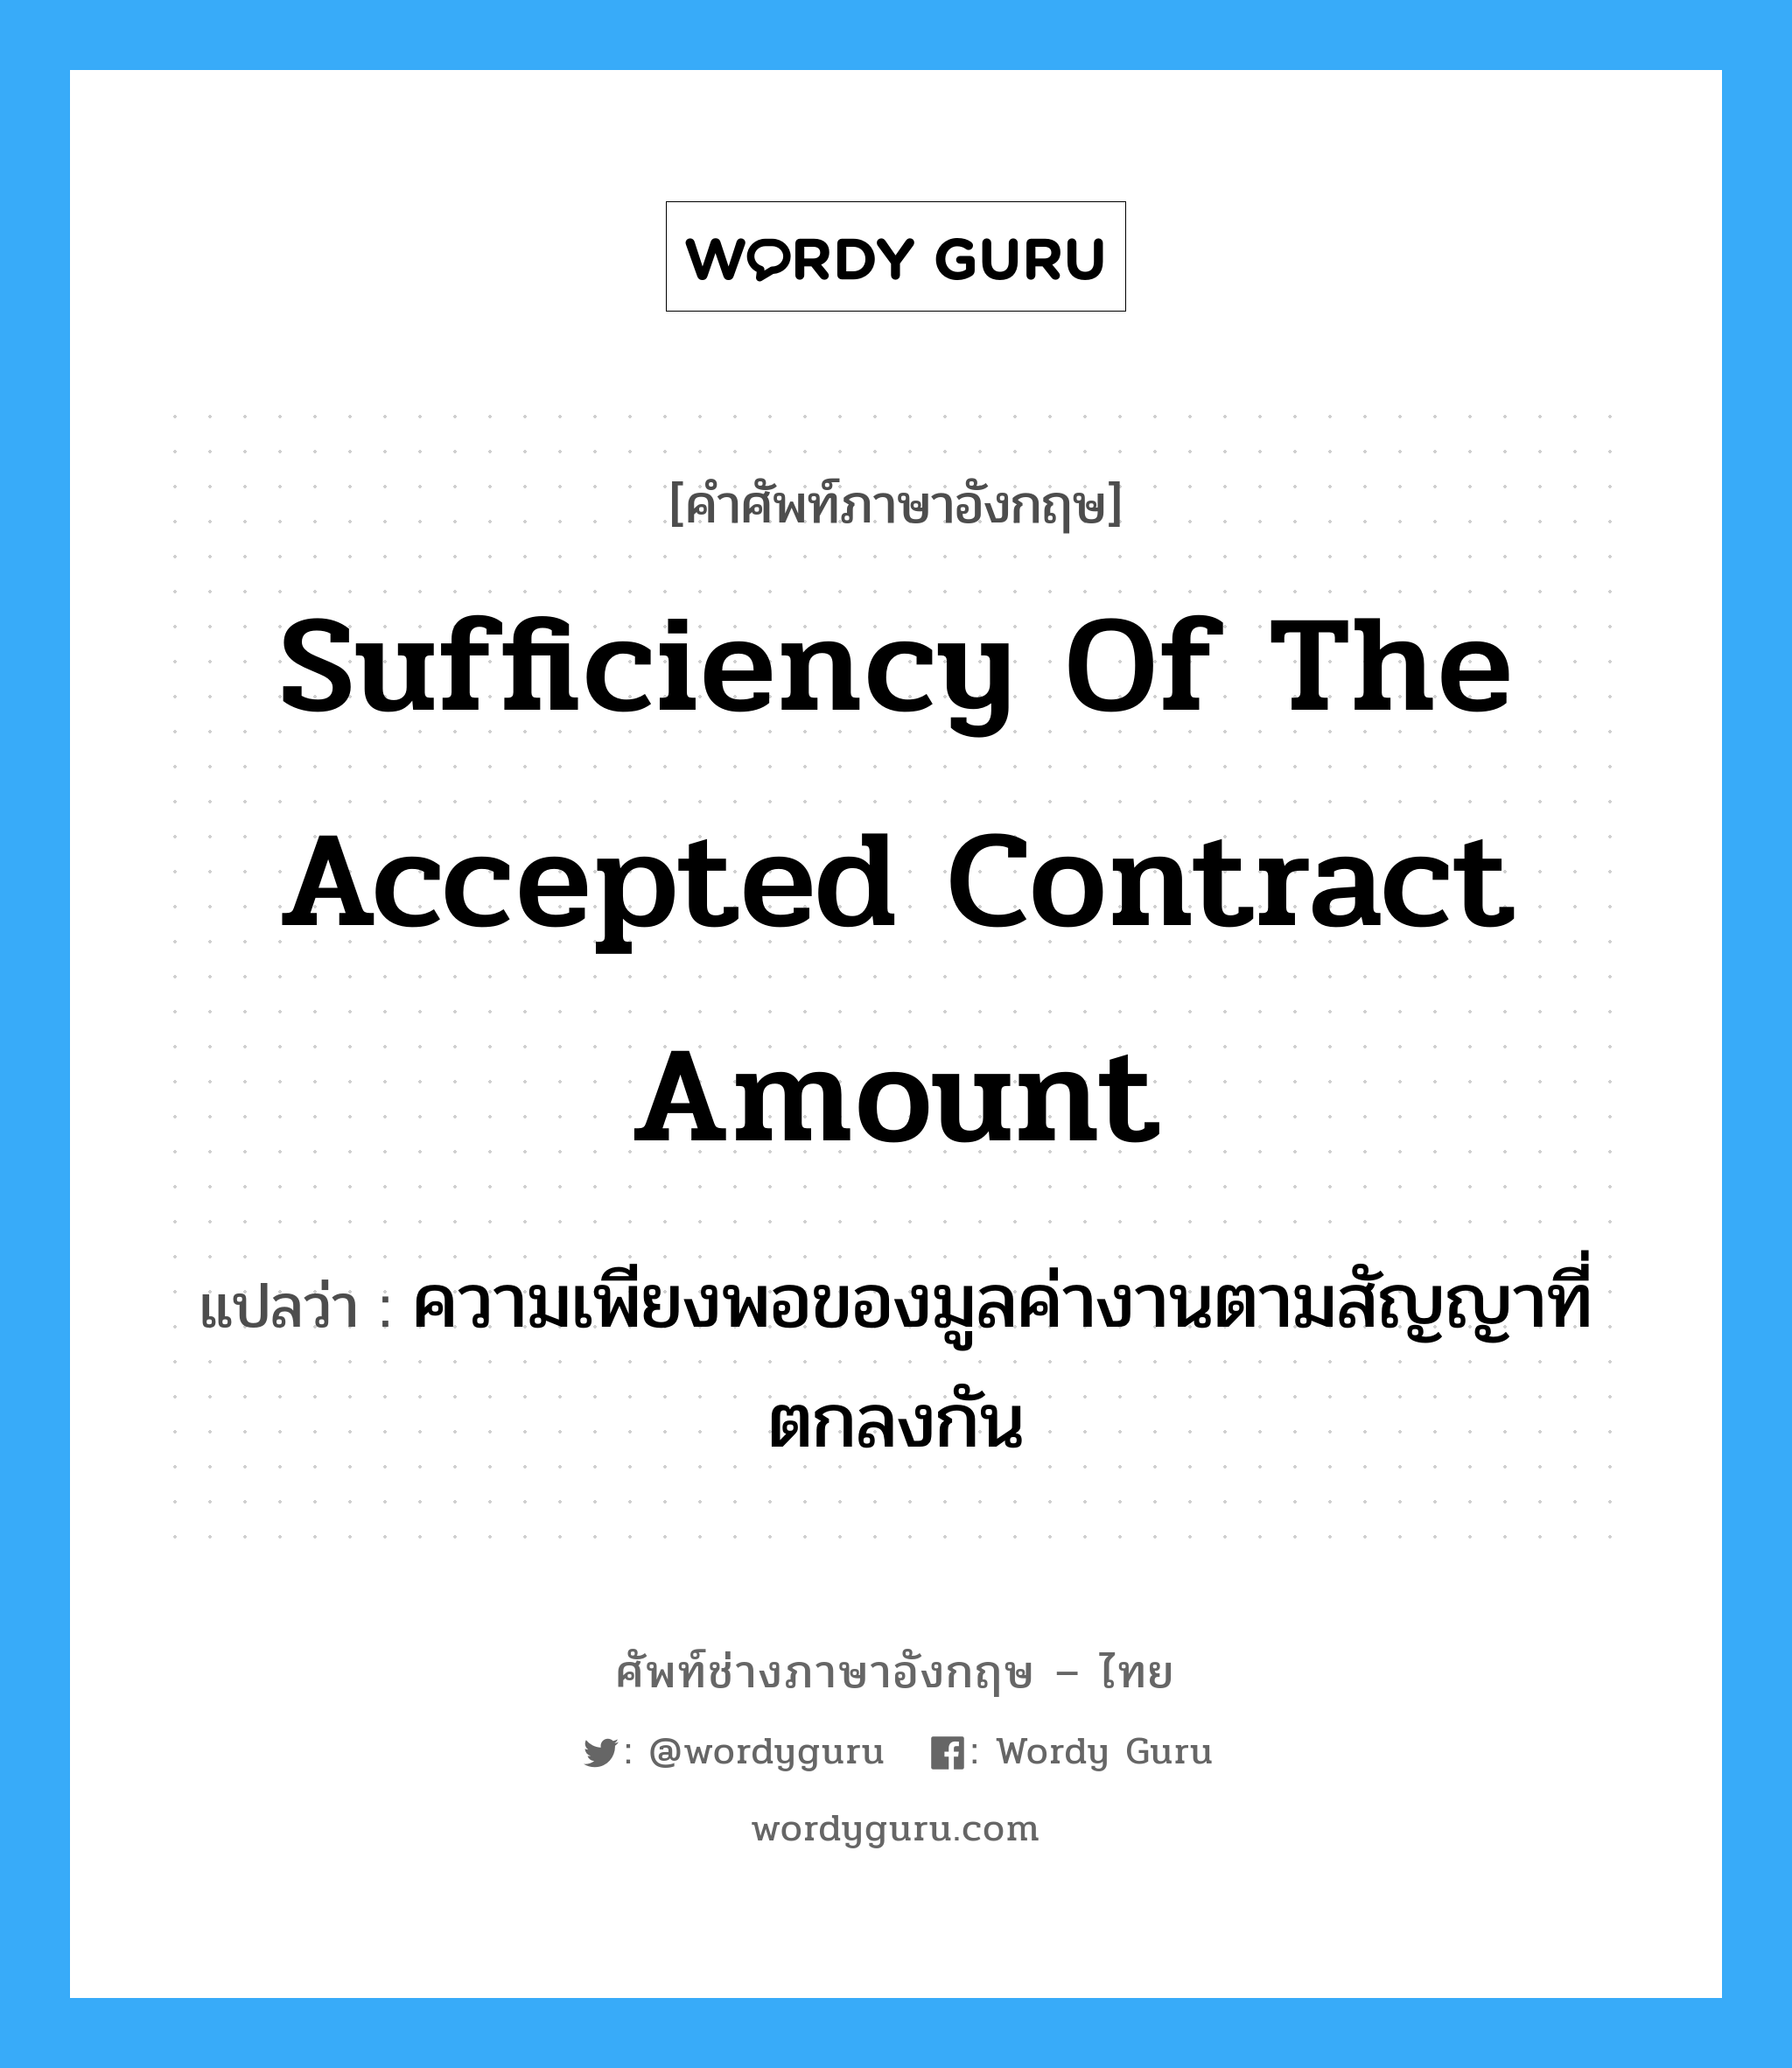 Sufficiency of the Accepted Contract Amount แปลว่า?, คำศัพท์ช่างภาษาอังกฤษ - ไทย Sufficiency of the Accepted Contract Amount คำศัพท์ภาษาอังกฤษ Sufficiency of the Accepted Contract Amount แปลว่า ความเพียงพอของมูลค่างานตามสัญญาที่ตกลงกัน